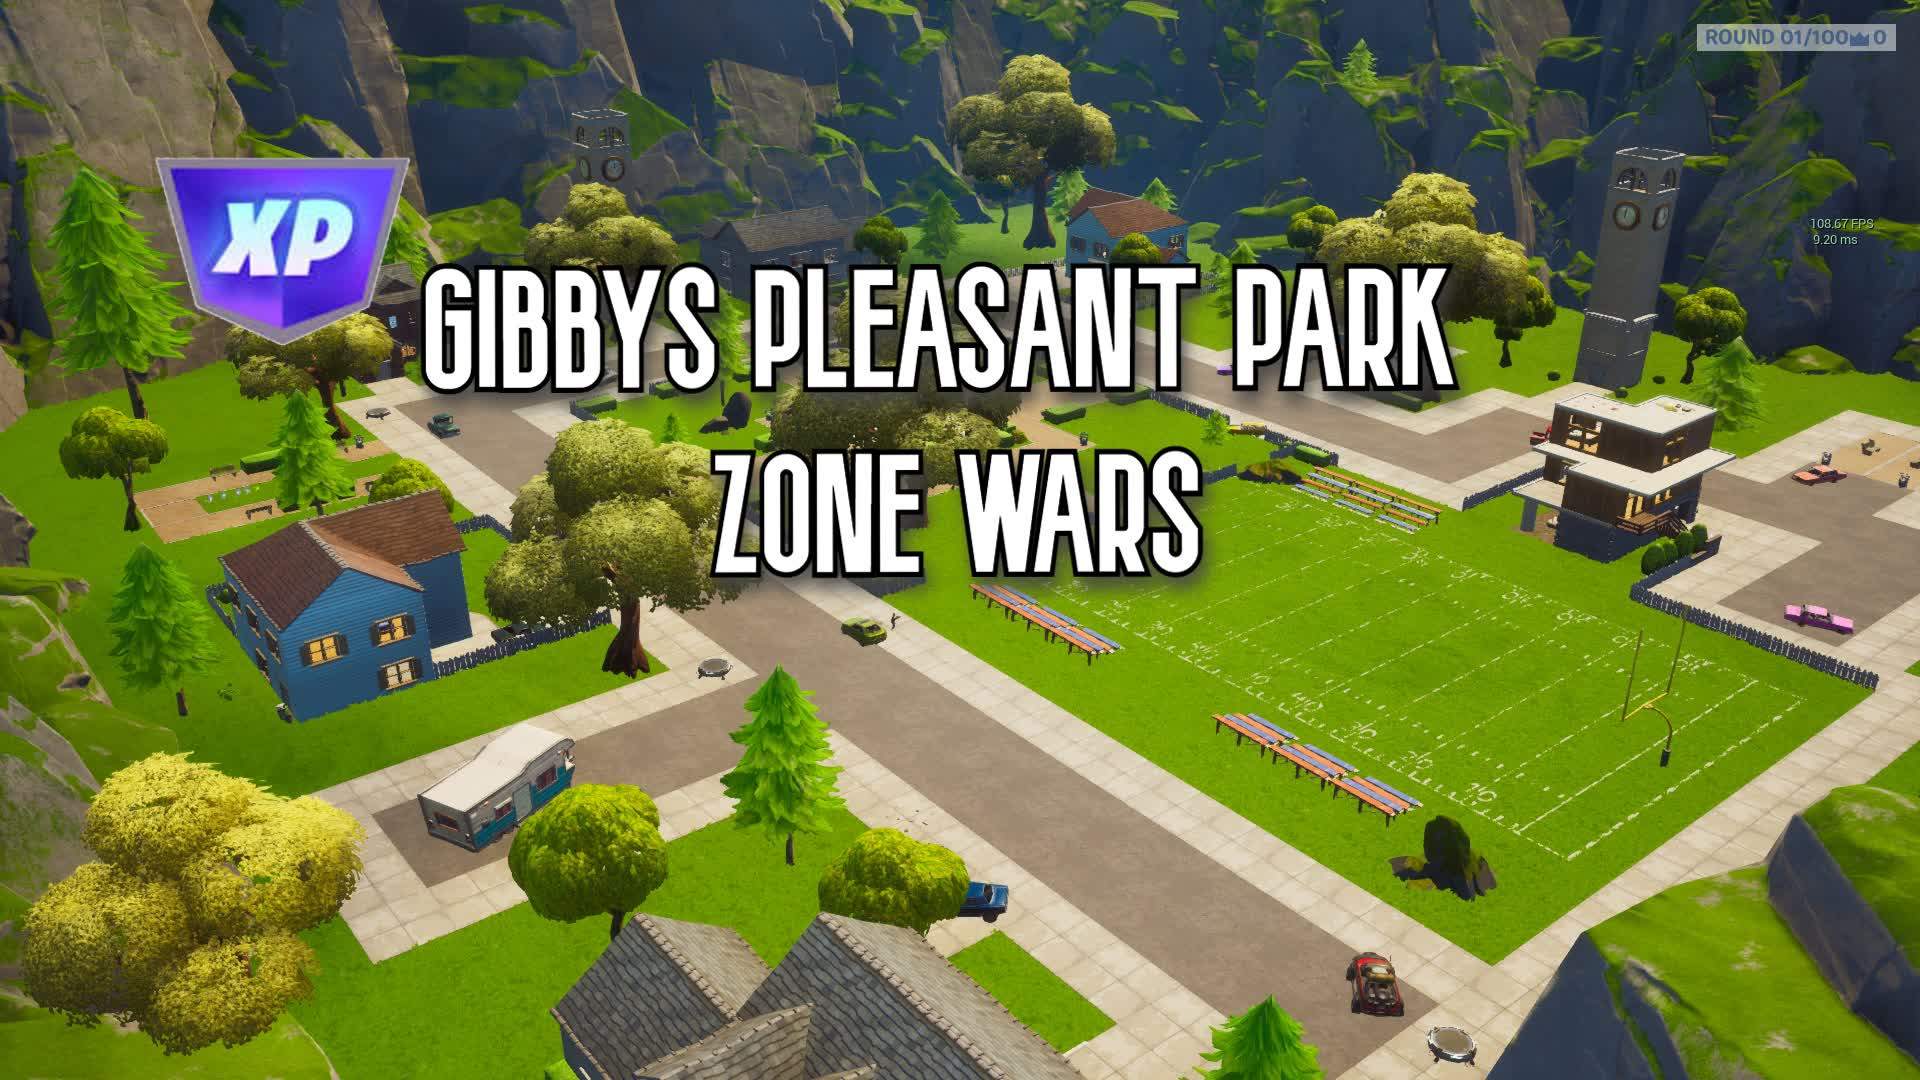 GIBBYS PLEASANT PARK ZONE WARS!